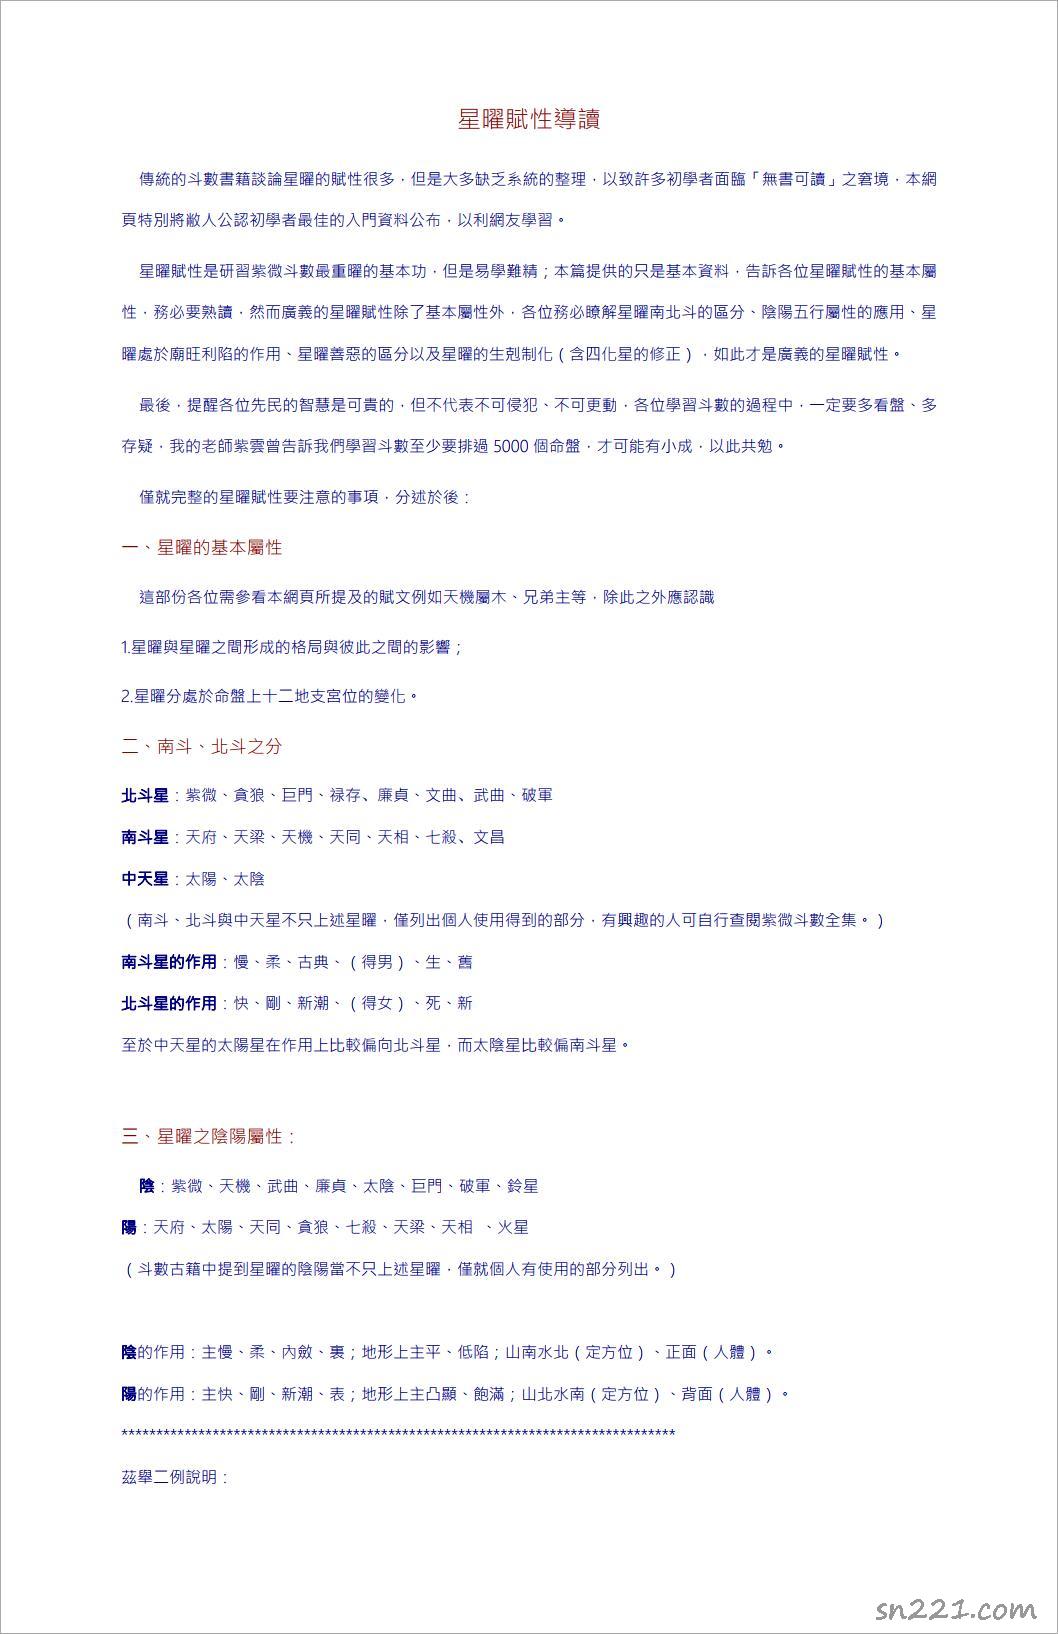 紫微鬥數紅皮本星耀基礎整理（紫雲學生）31頁.pdf